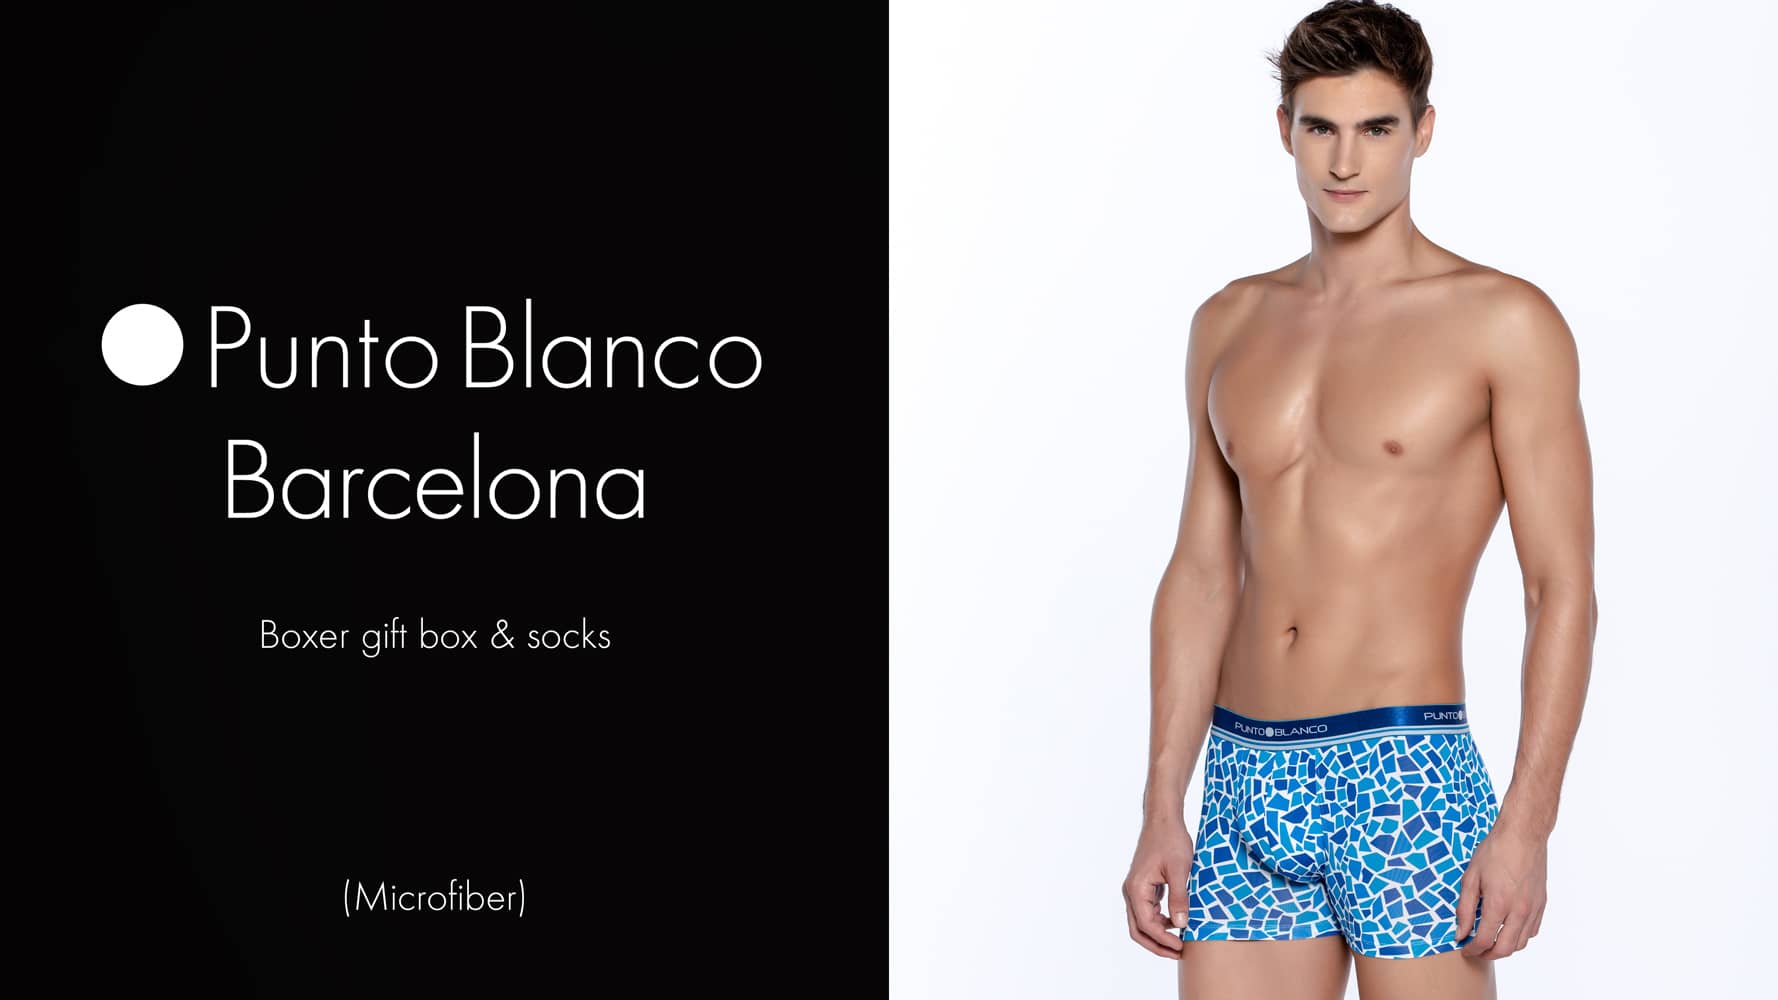 Boxer gift box and socks - Barcelona